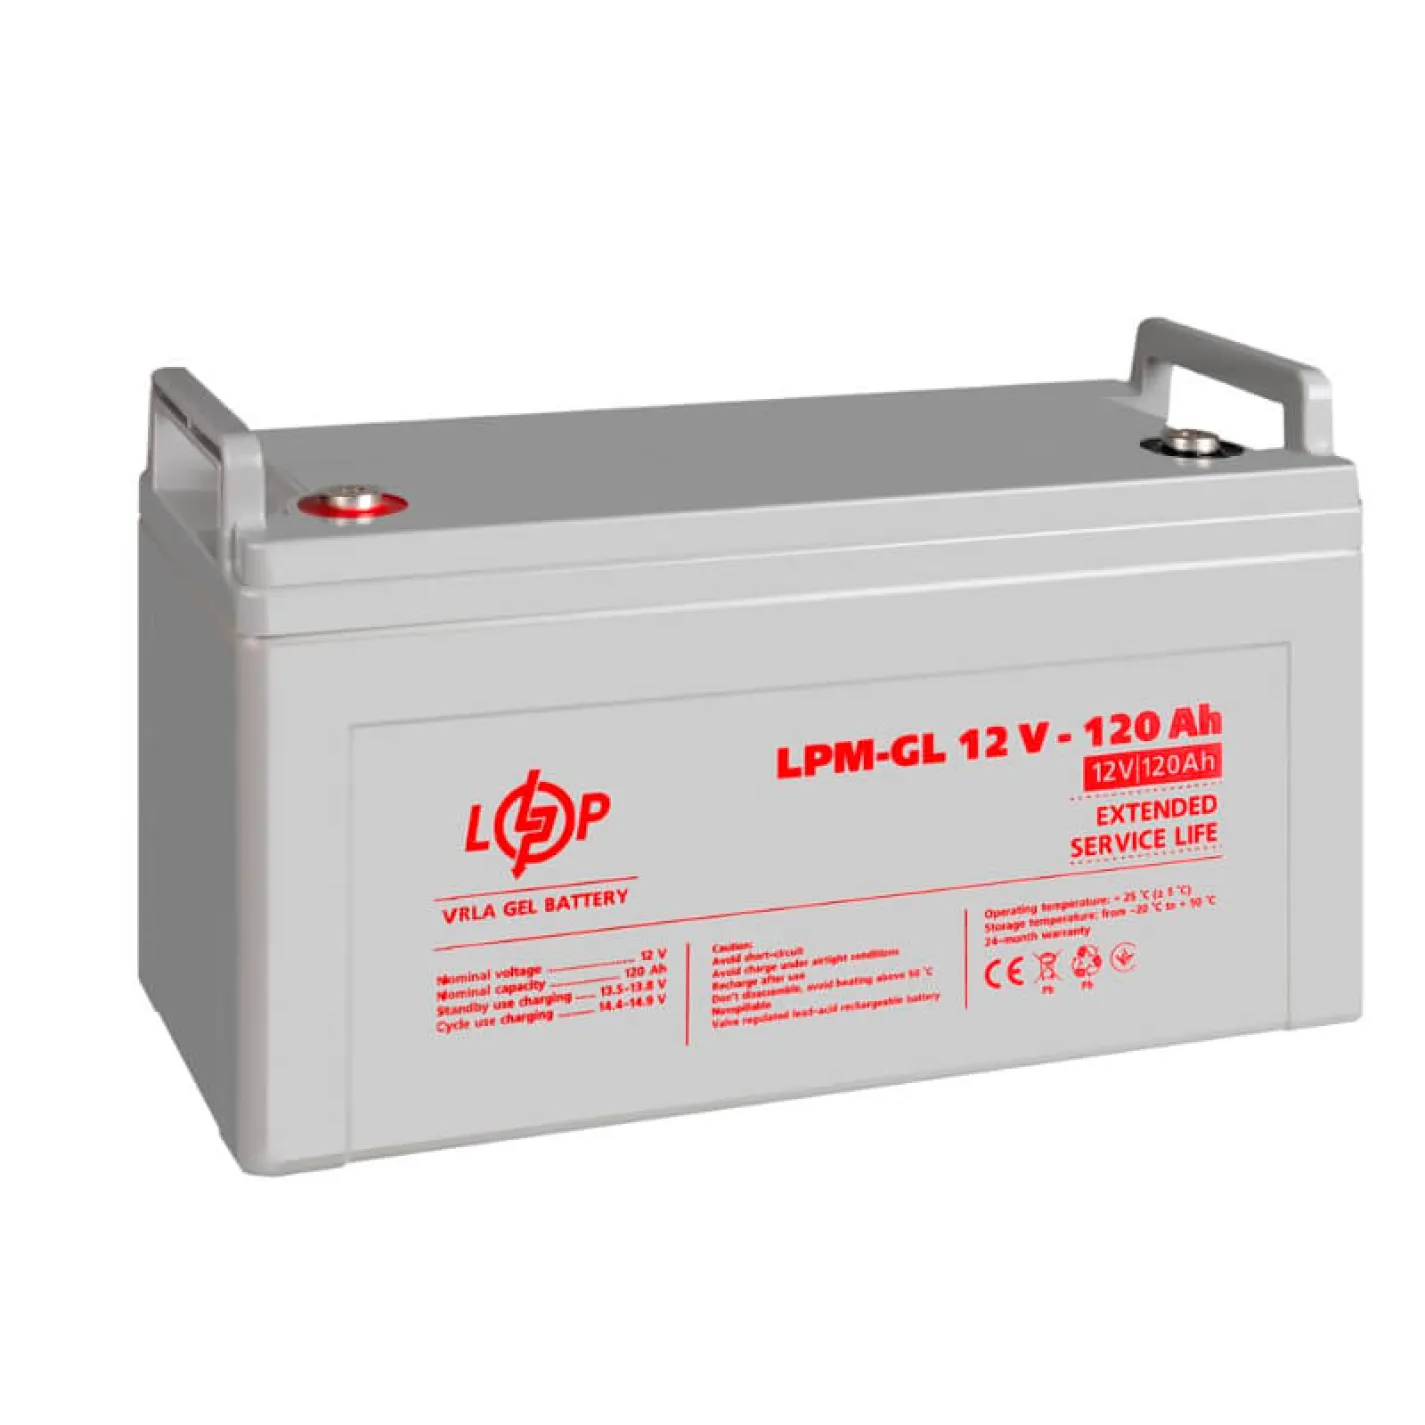 Аккумулятор гелевый LogicPower LPM-GL 12V - 120 Ah (LP3870) - Фото 1